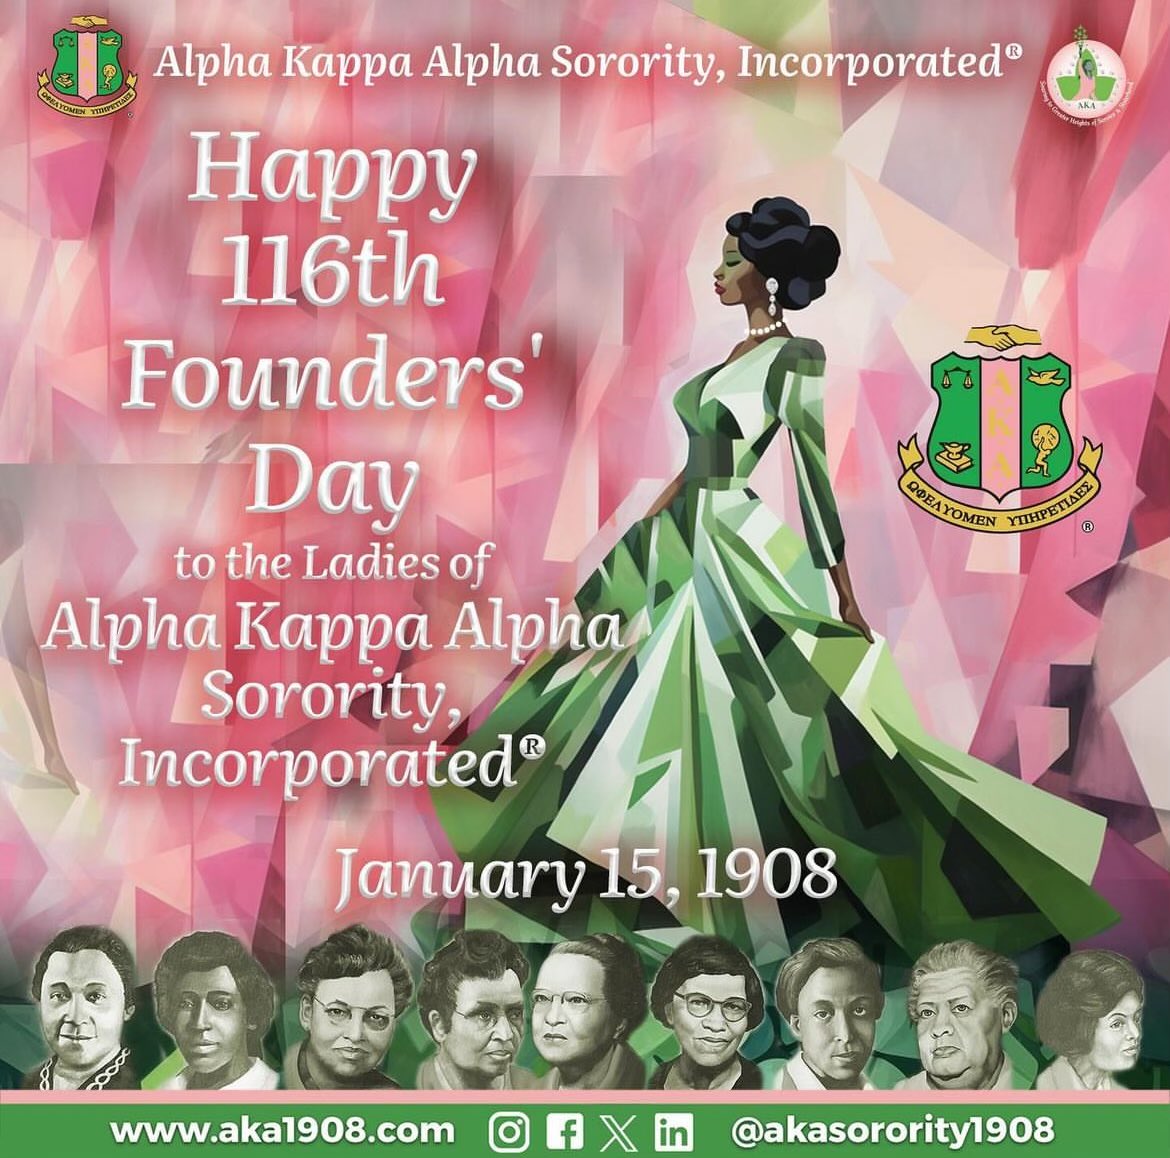 Happy Founders’ Day Sorors!! 💞💚 #AKA #AlphaKappaAlpha #1908 #AKA1908